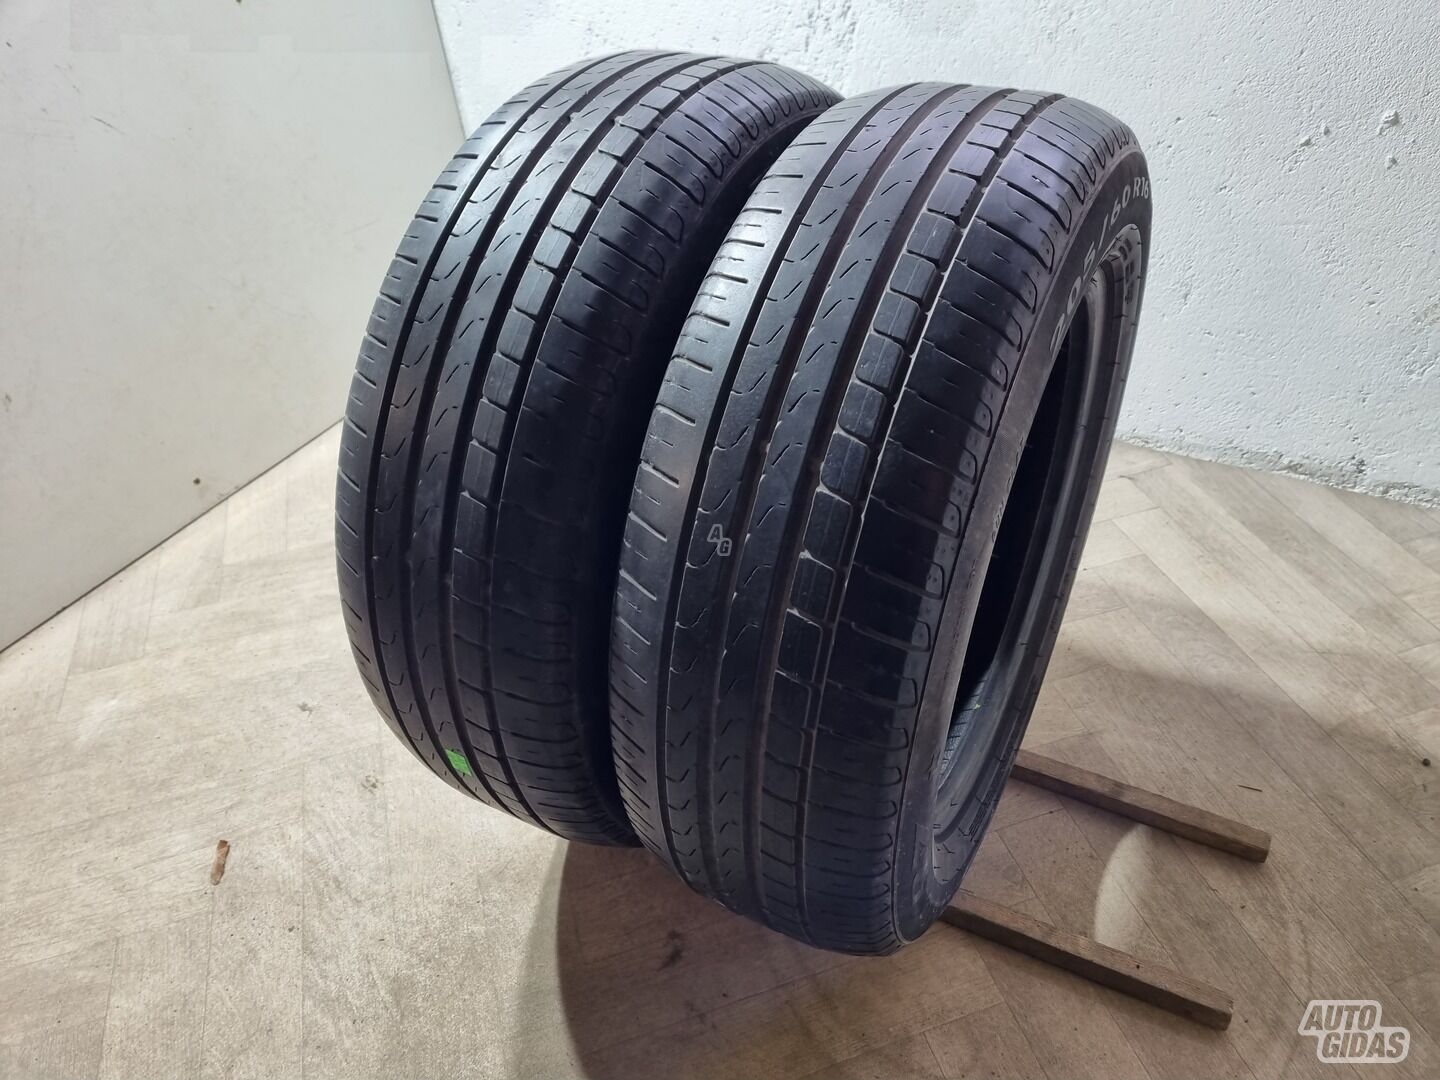 Pirelli 4-5mm R16 summer tyres passanger car